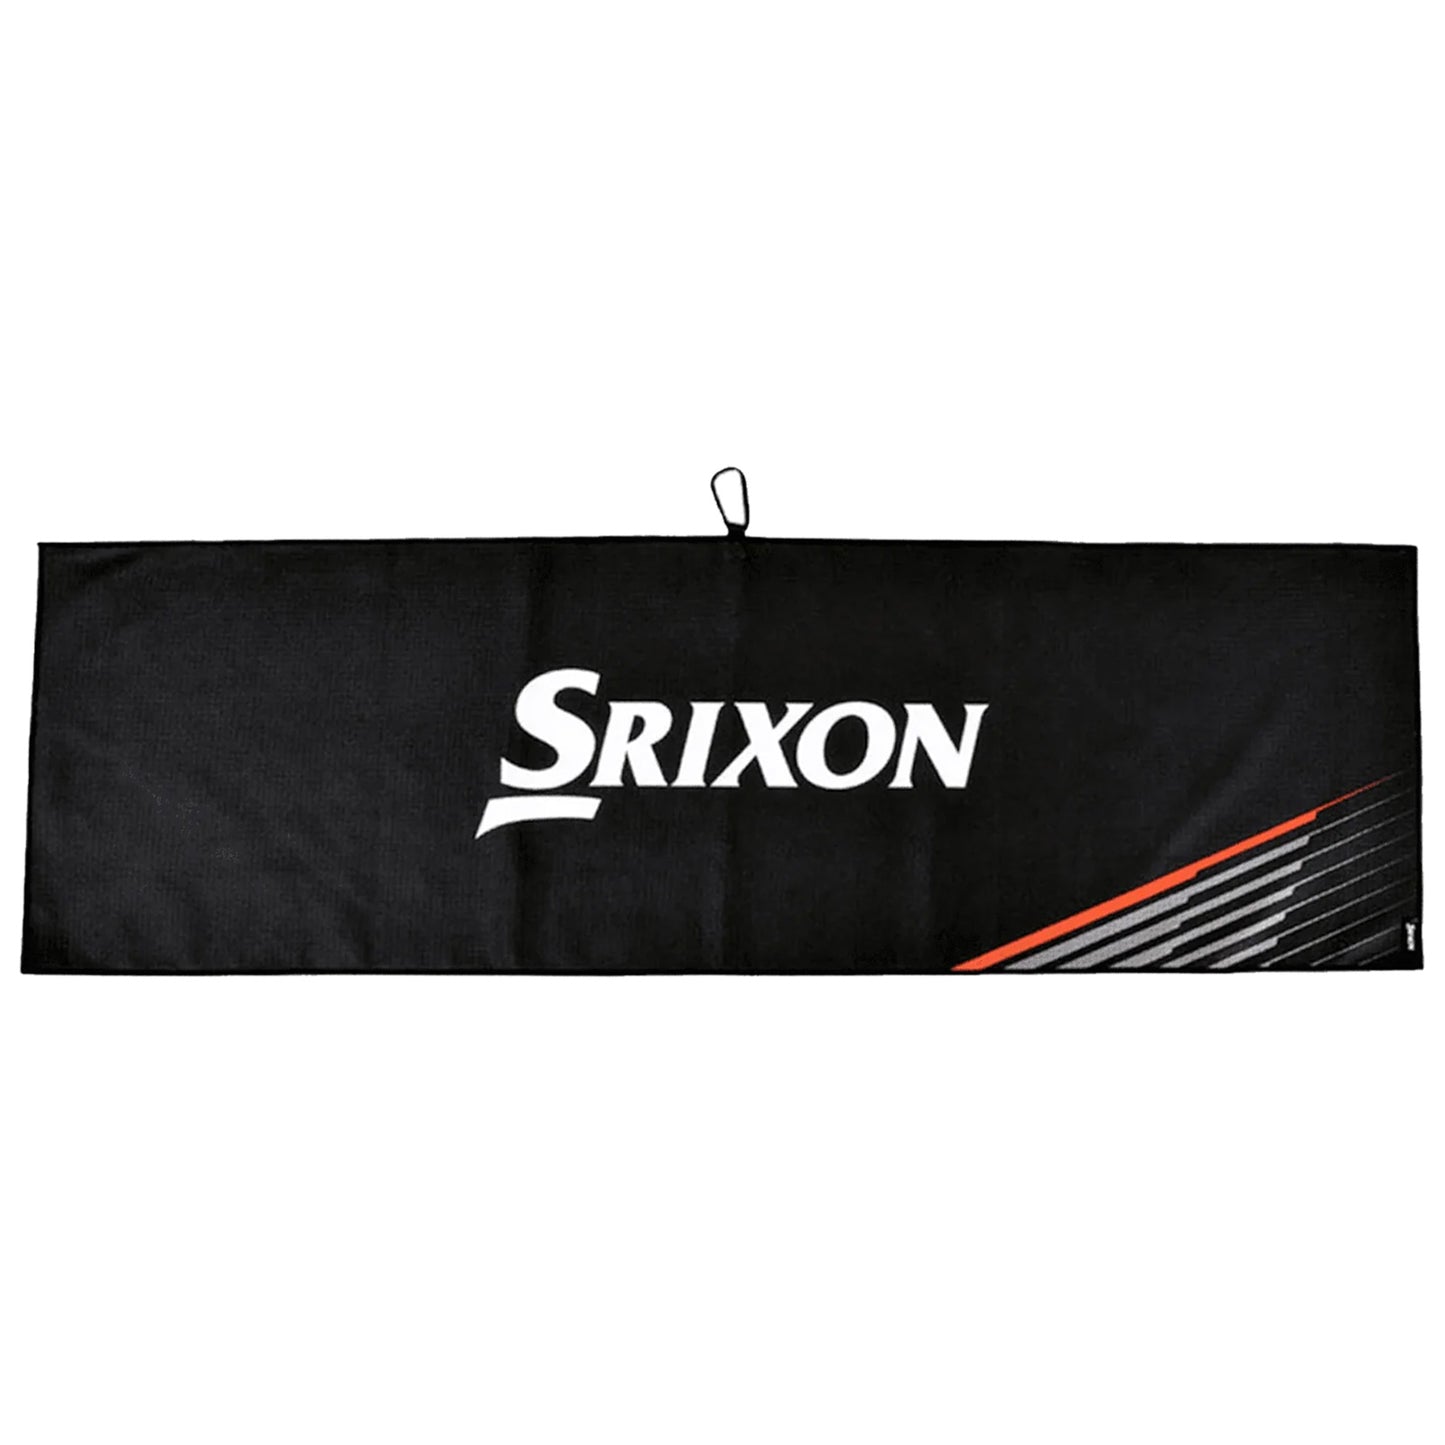 Srixon Bag Tour Towel 12124110